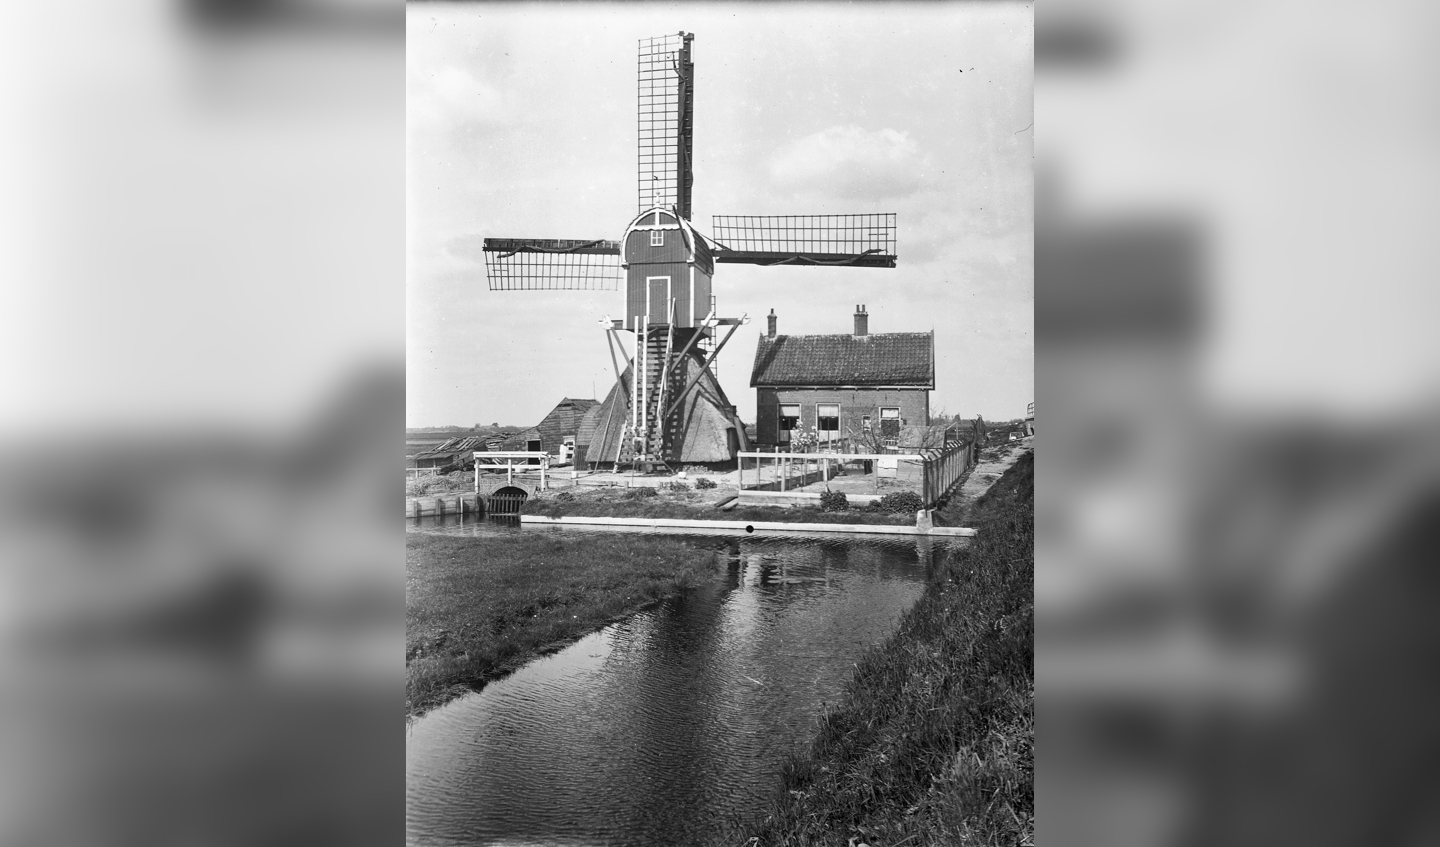 De fietstocht leidt langs de Munnikkenmolen die nu in de Munnikkenpolder staat. Op deze foto uit 1953 is de molen nog op zijn oude plek te zien, langs de Dwarswatering. 